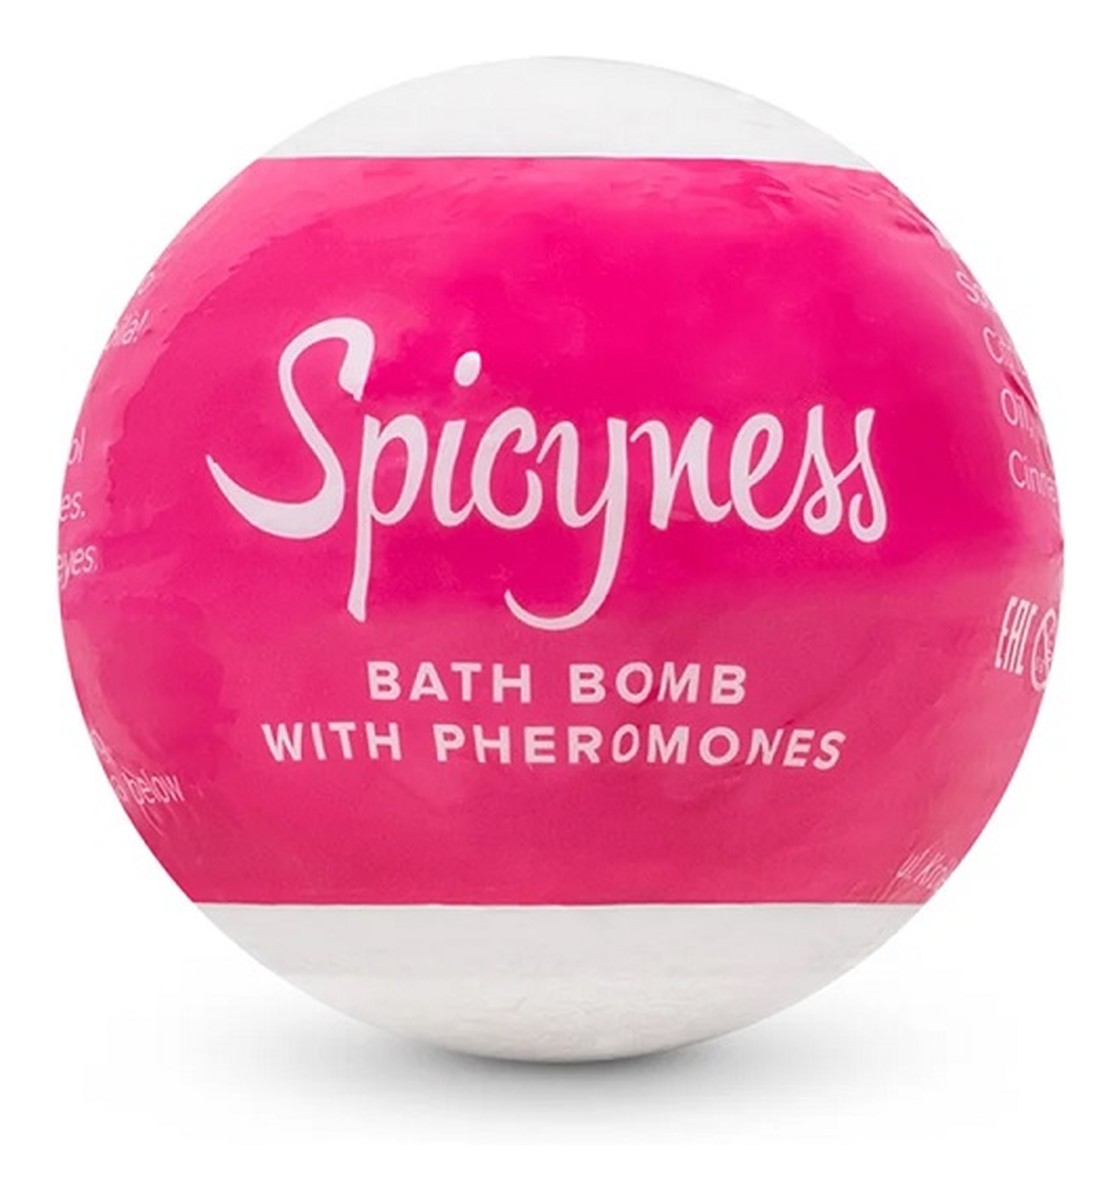 Bath Bomb kula do kąpieli z feromonami Spicyness